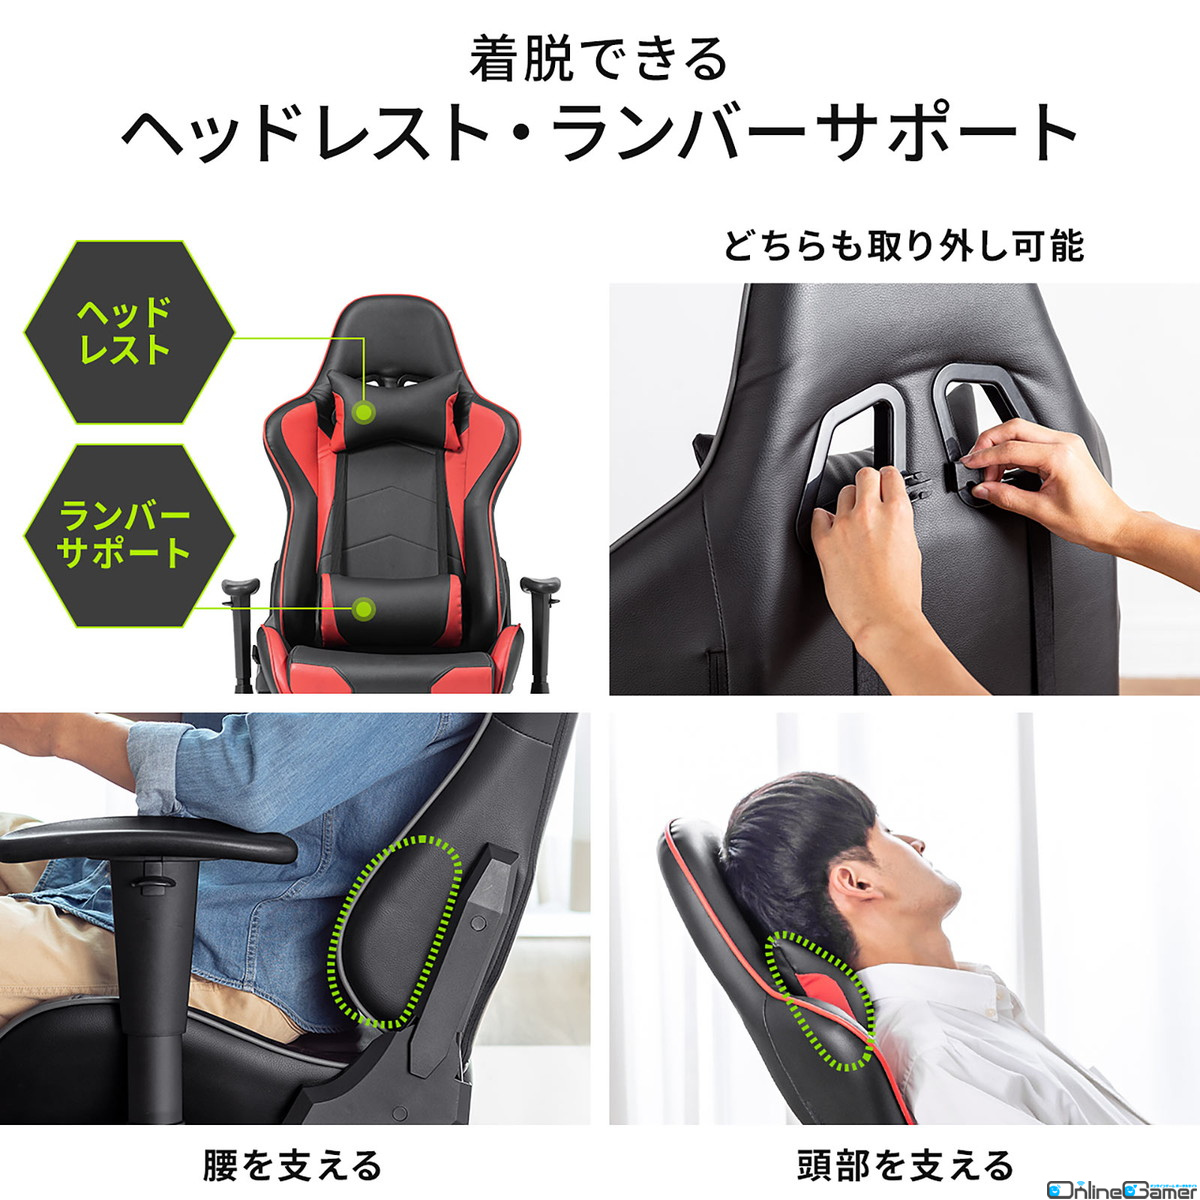 からだ全体を預けられるバケットシート形状のキャスター付きゲーミング座椅子が発売！カラーはレッドとグレーの2種の画像